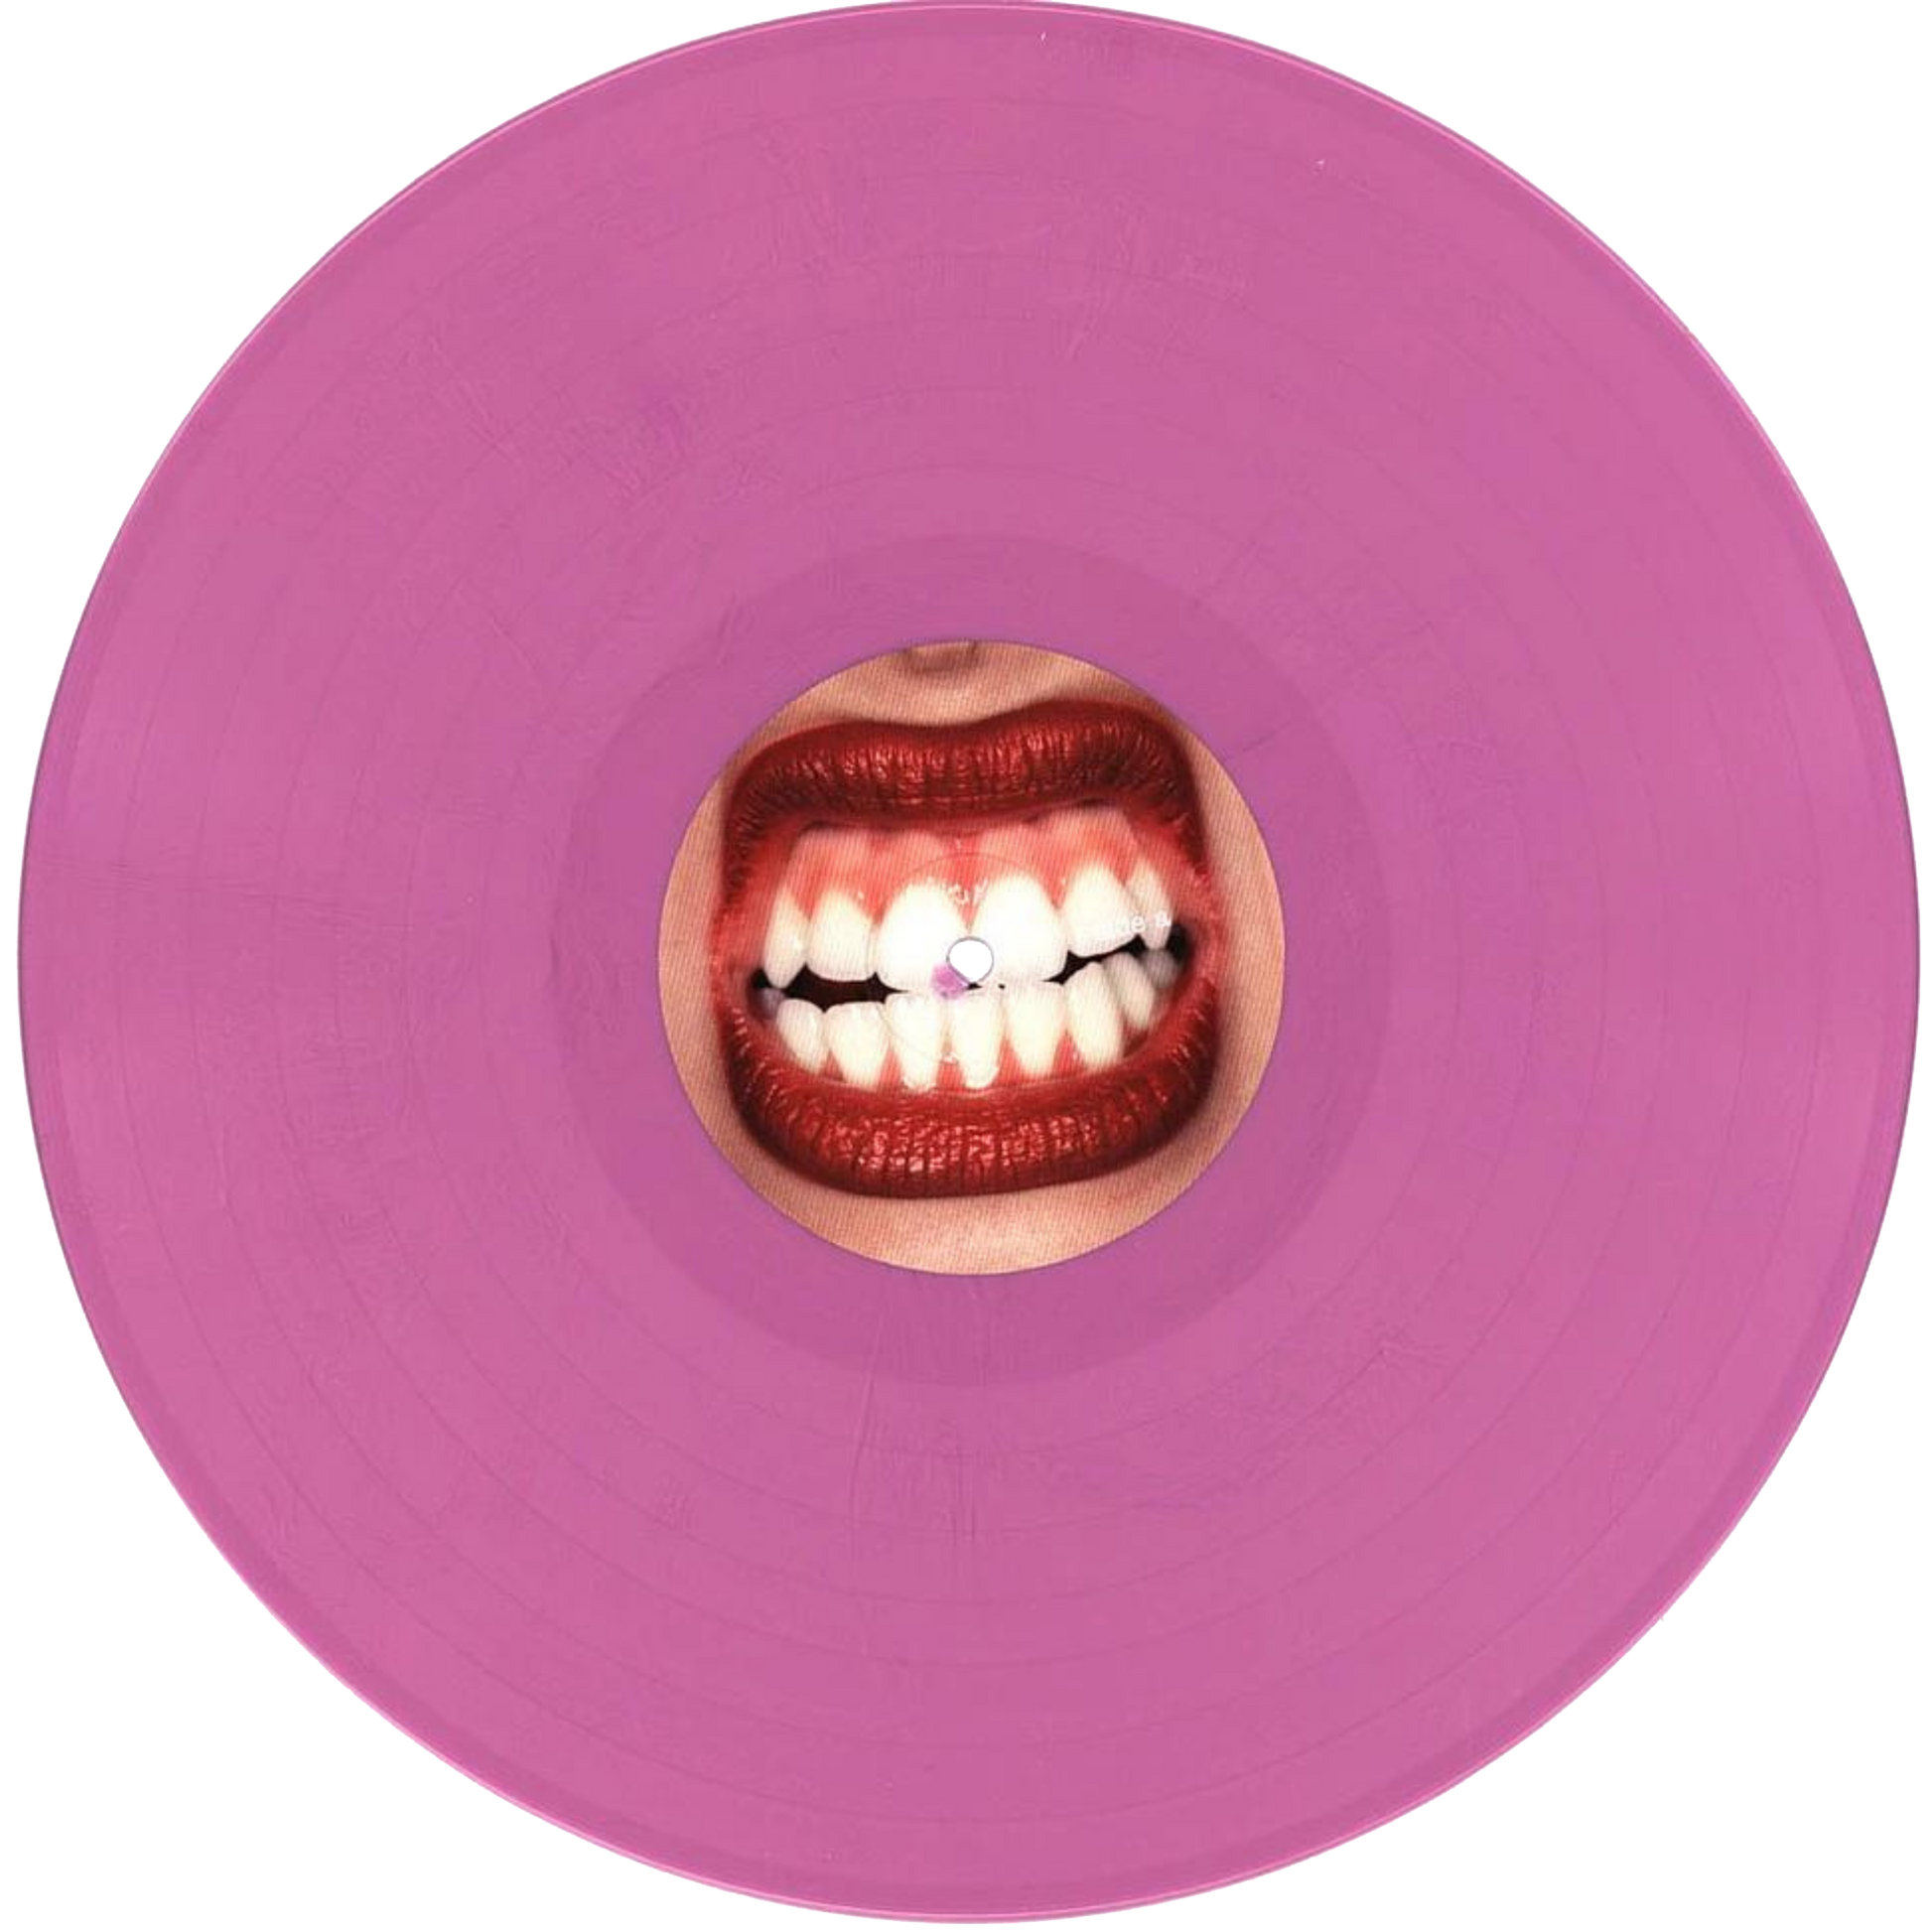 Vinyl of Olivia Rodrigo's latest album GUTS contains four bonus